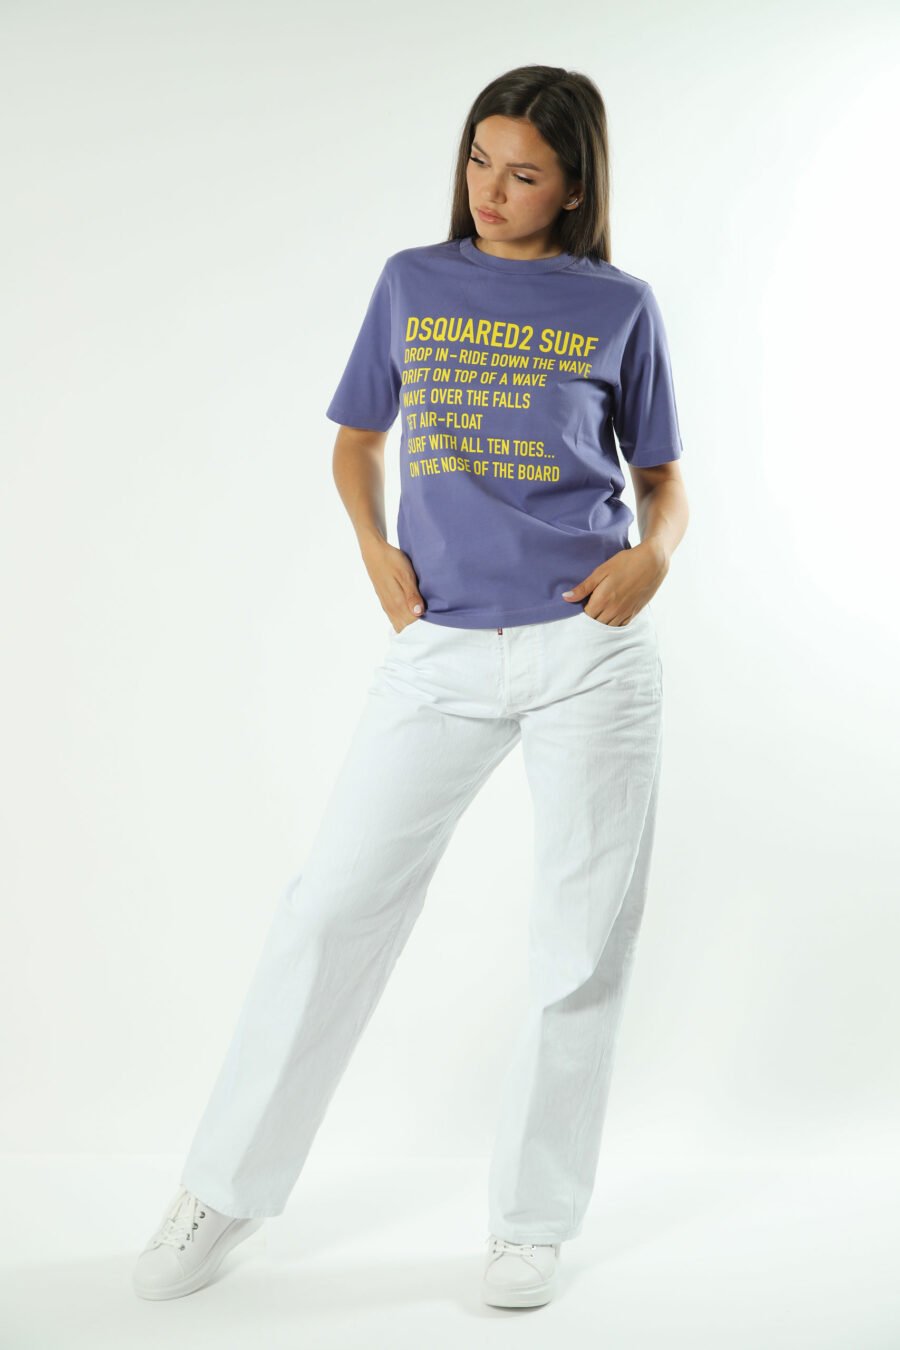 T-shirt lilás com texto maxilogo amarelo - 8052134537671 4